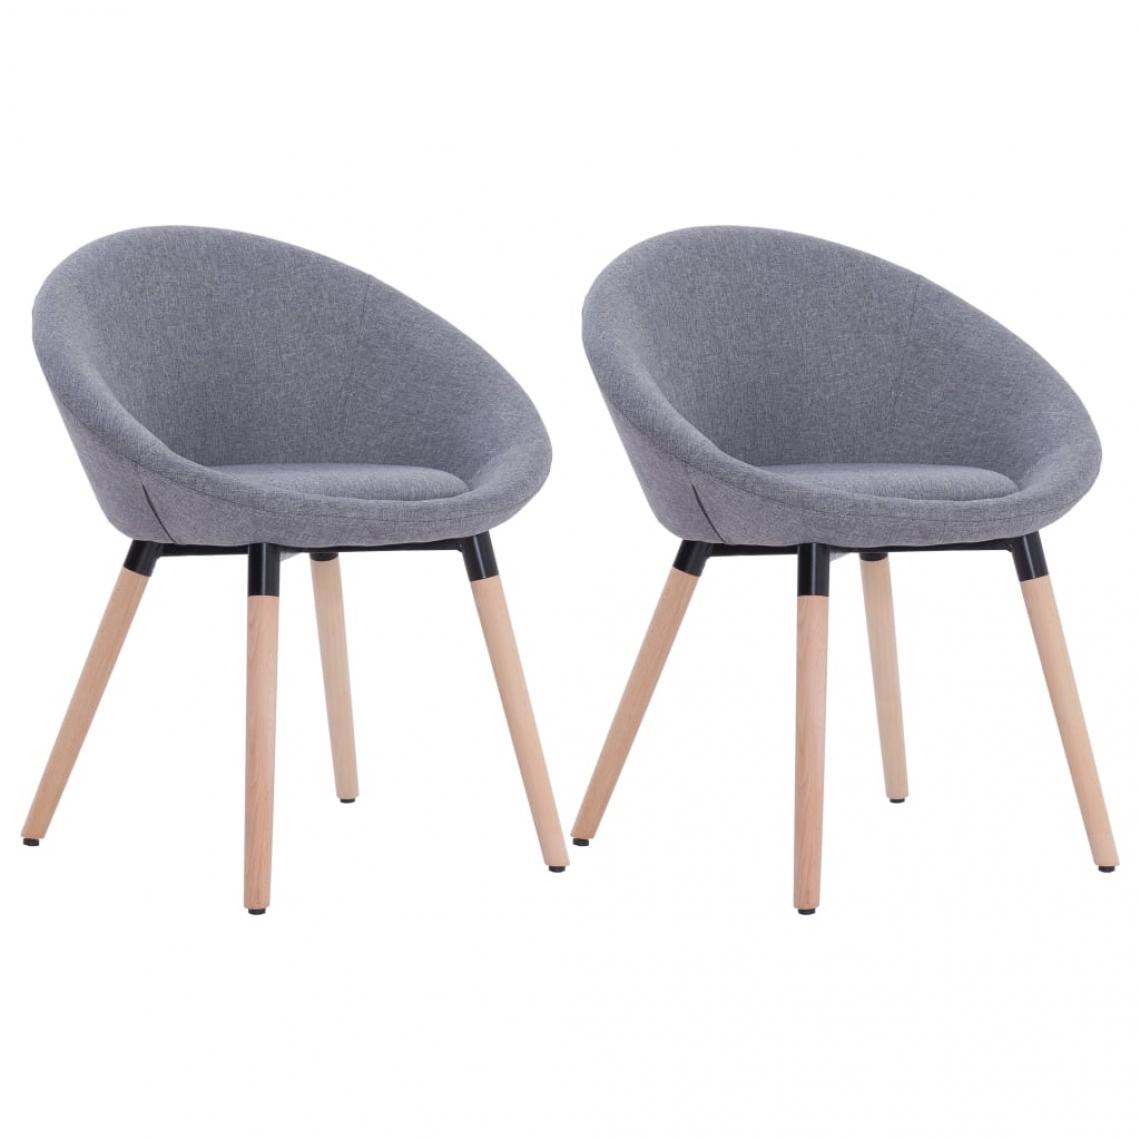 Decoshop26 - Lot de 2 chaises de salle à manger cuisine design contemporain tissu gris clair CDS020477 - Chaises